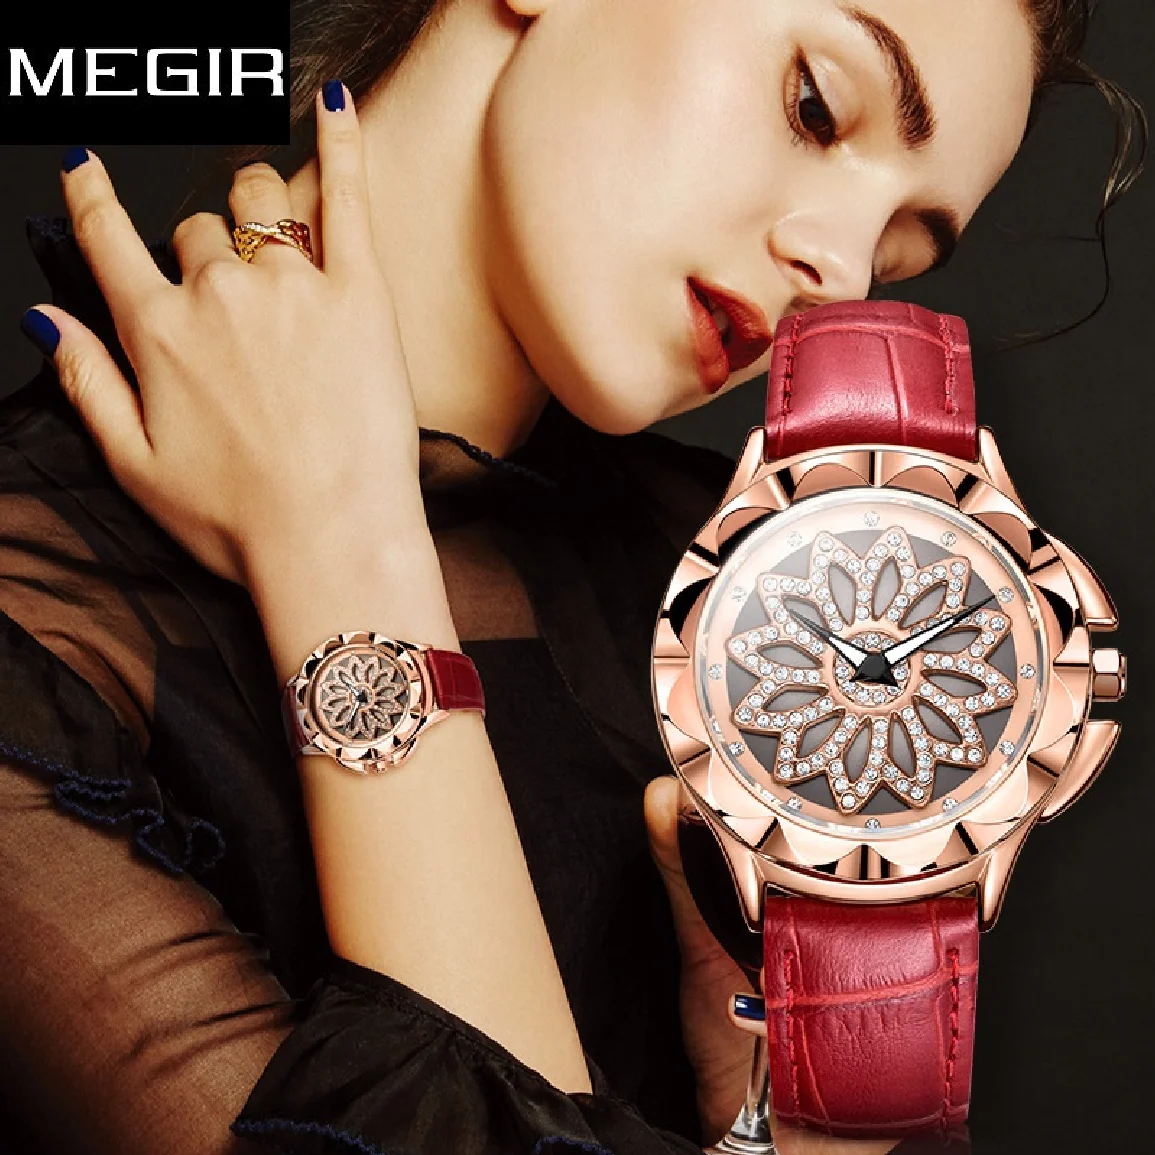 

Часы MEGIR женские кварцевые с вращающимся циферблатом, люксовые Модные Повседневные Элегантные со стразами, с красным кожаным ремешком